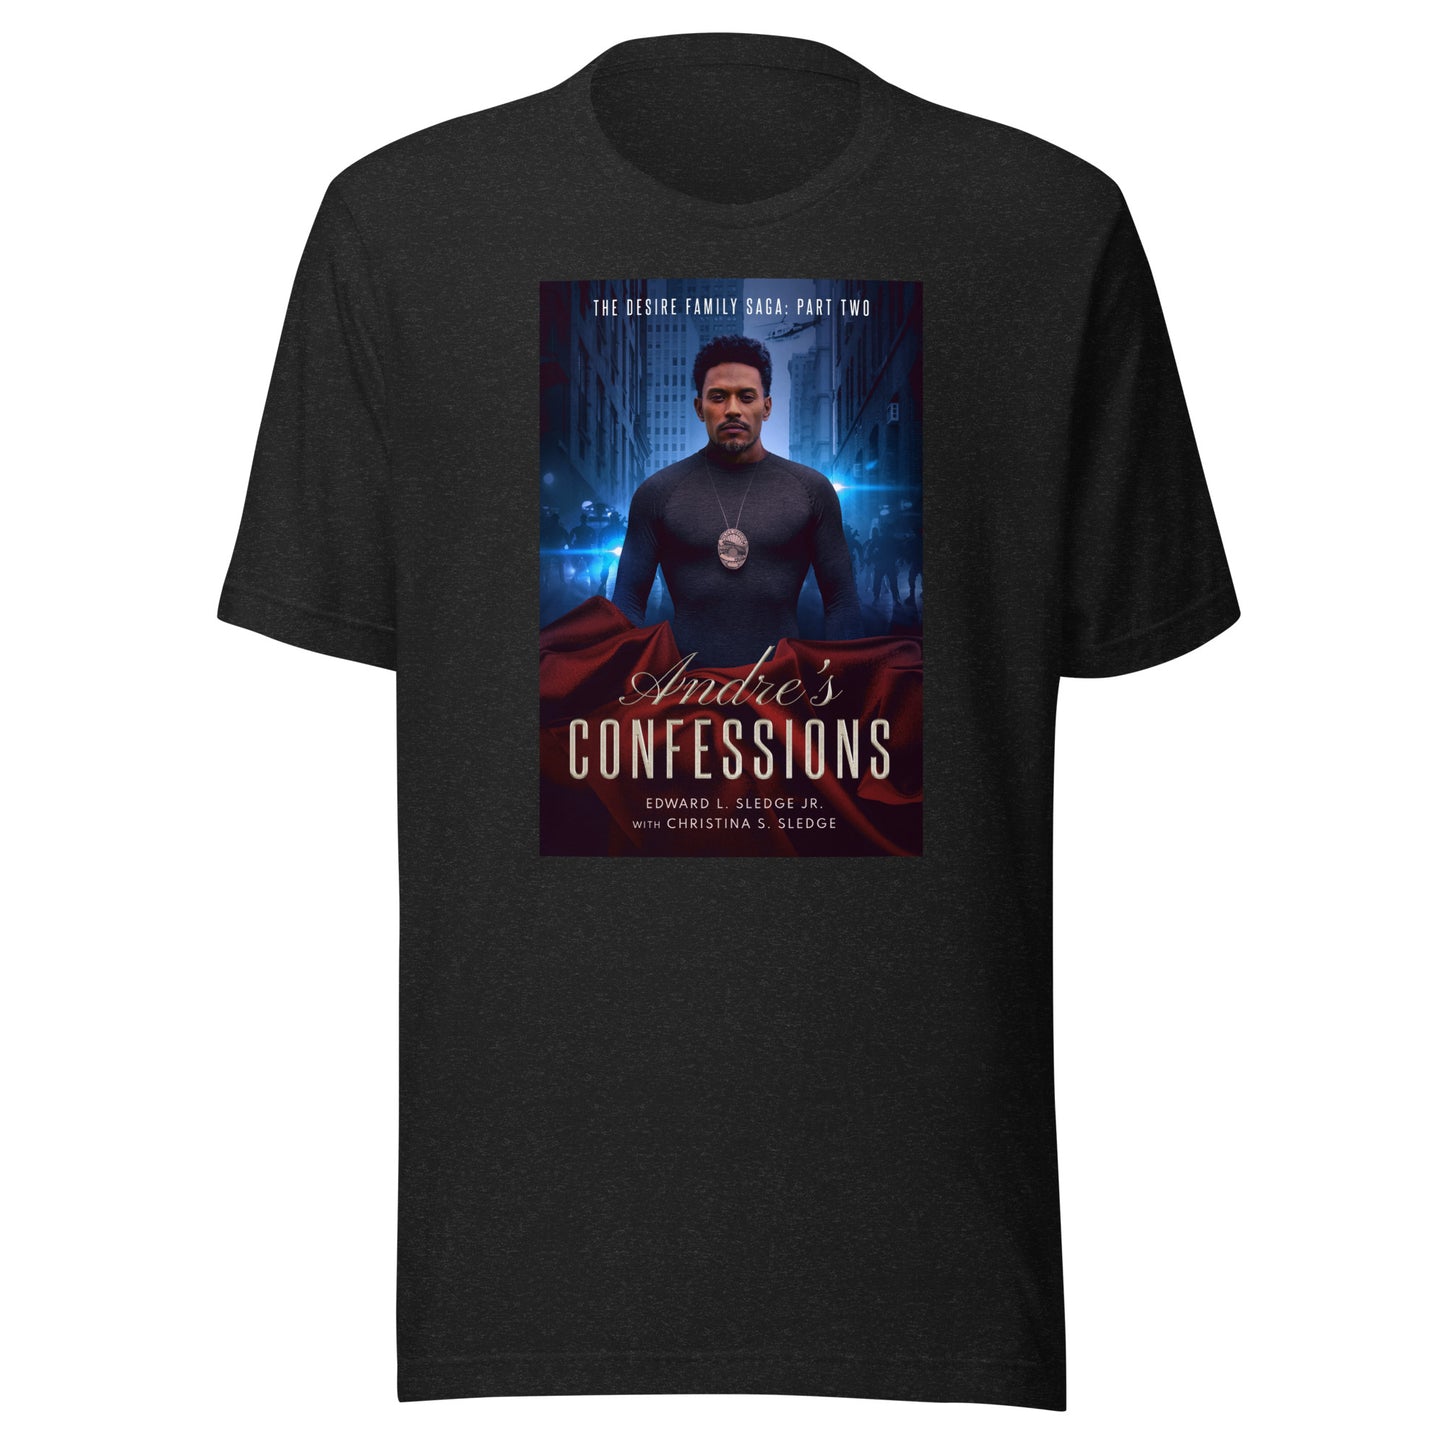 Camiseta unisex Las confesiones de Andre